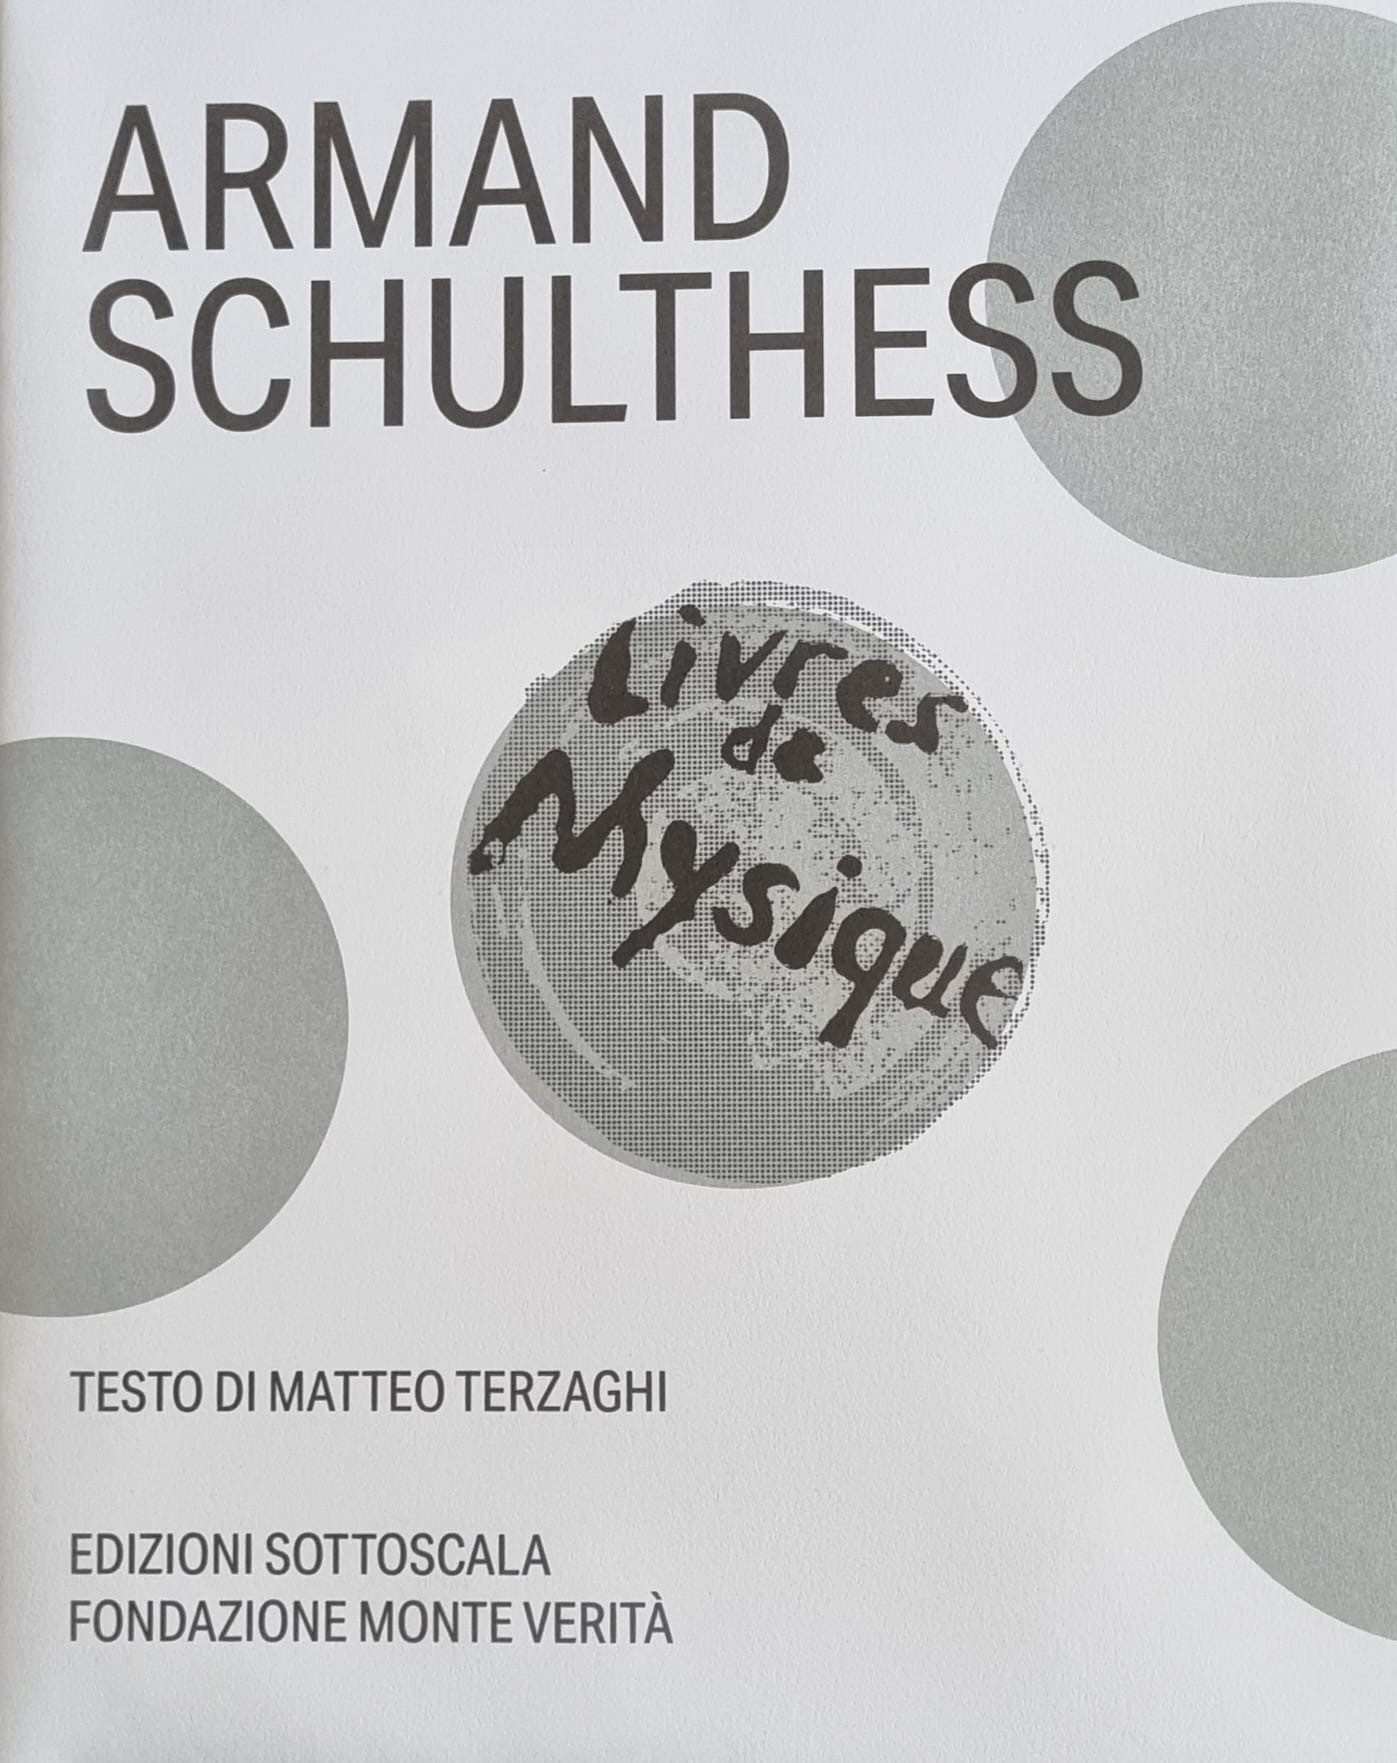 Armand Schulthess - Livres de Mysique (Poster)